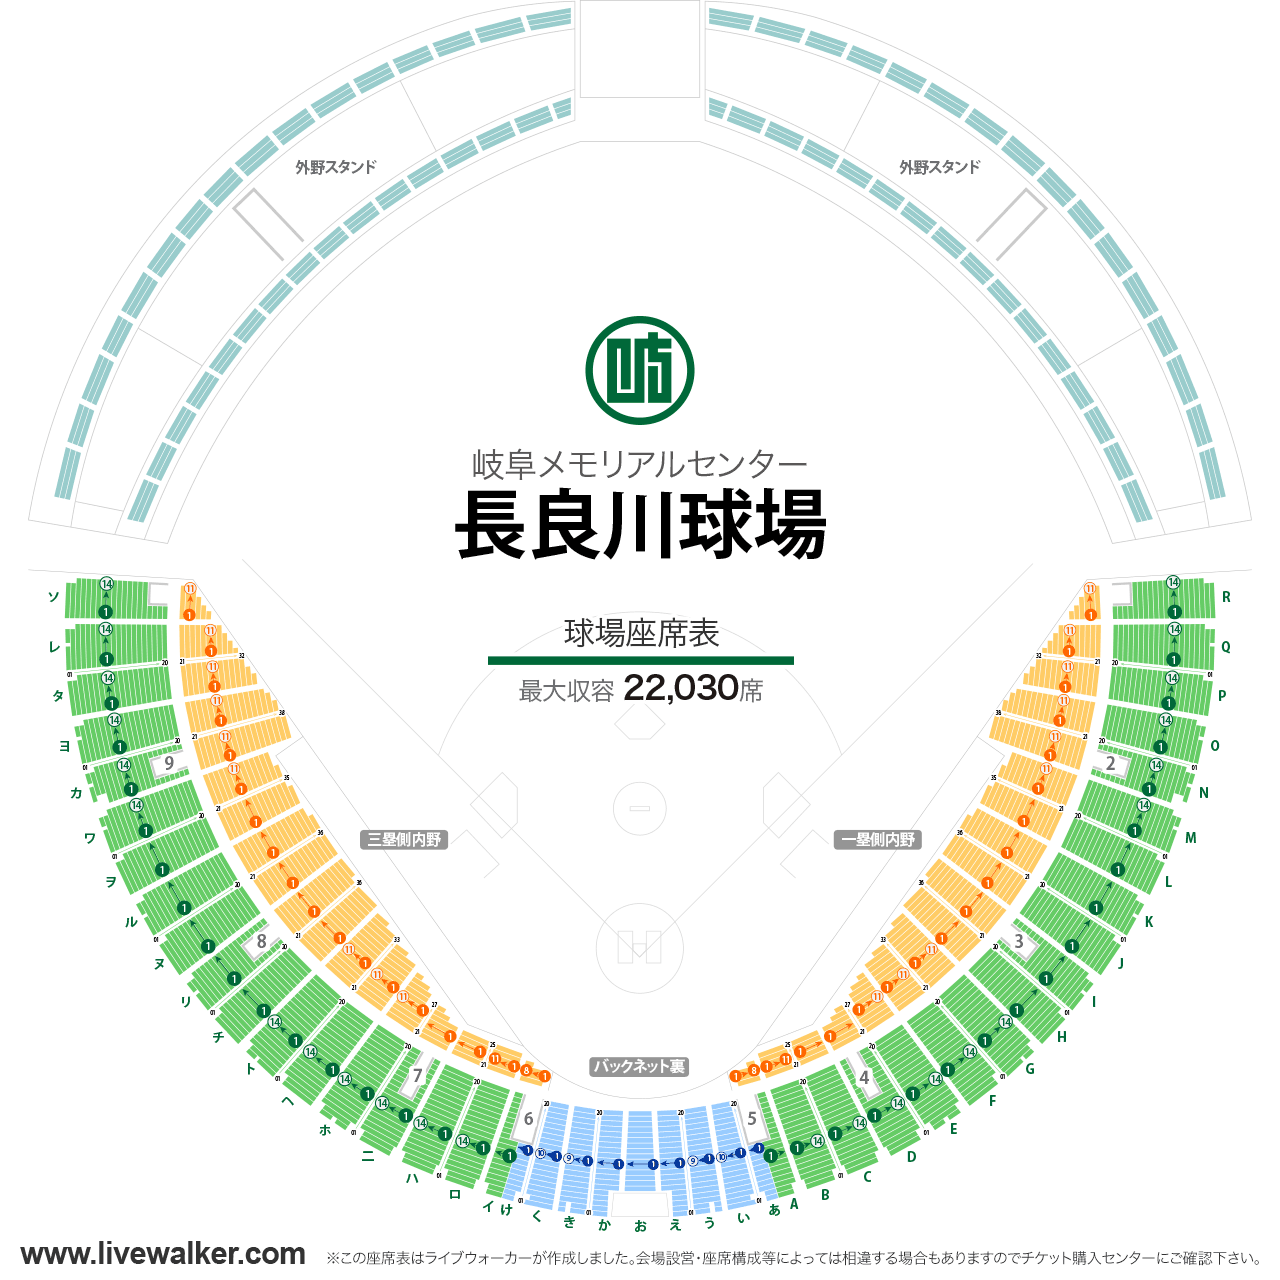 長良川球場球場の座席表